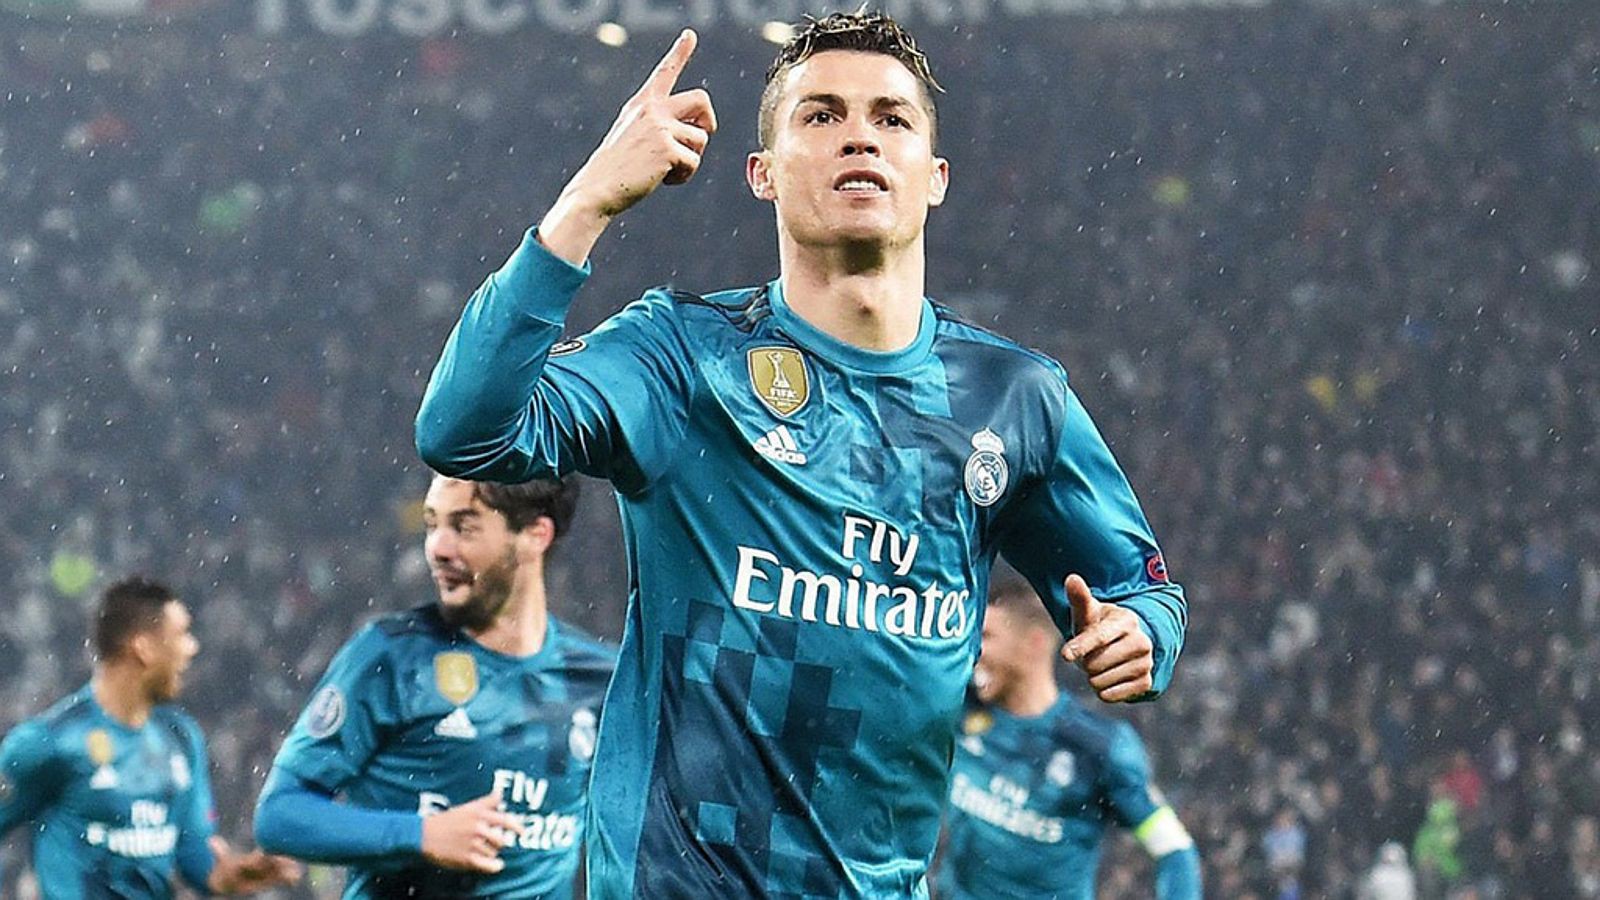 hình ảnh: Ronaldo xứng đáng nhận tràng vỗ tay tán dương từ chính CĐV Juventus